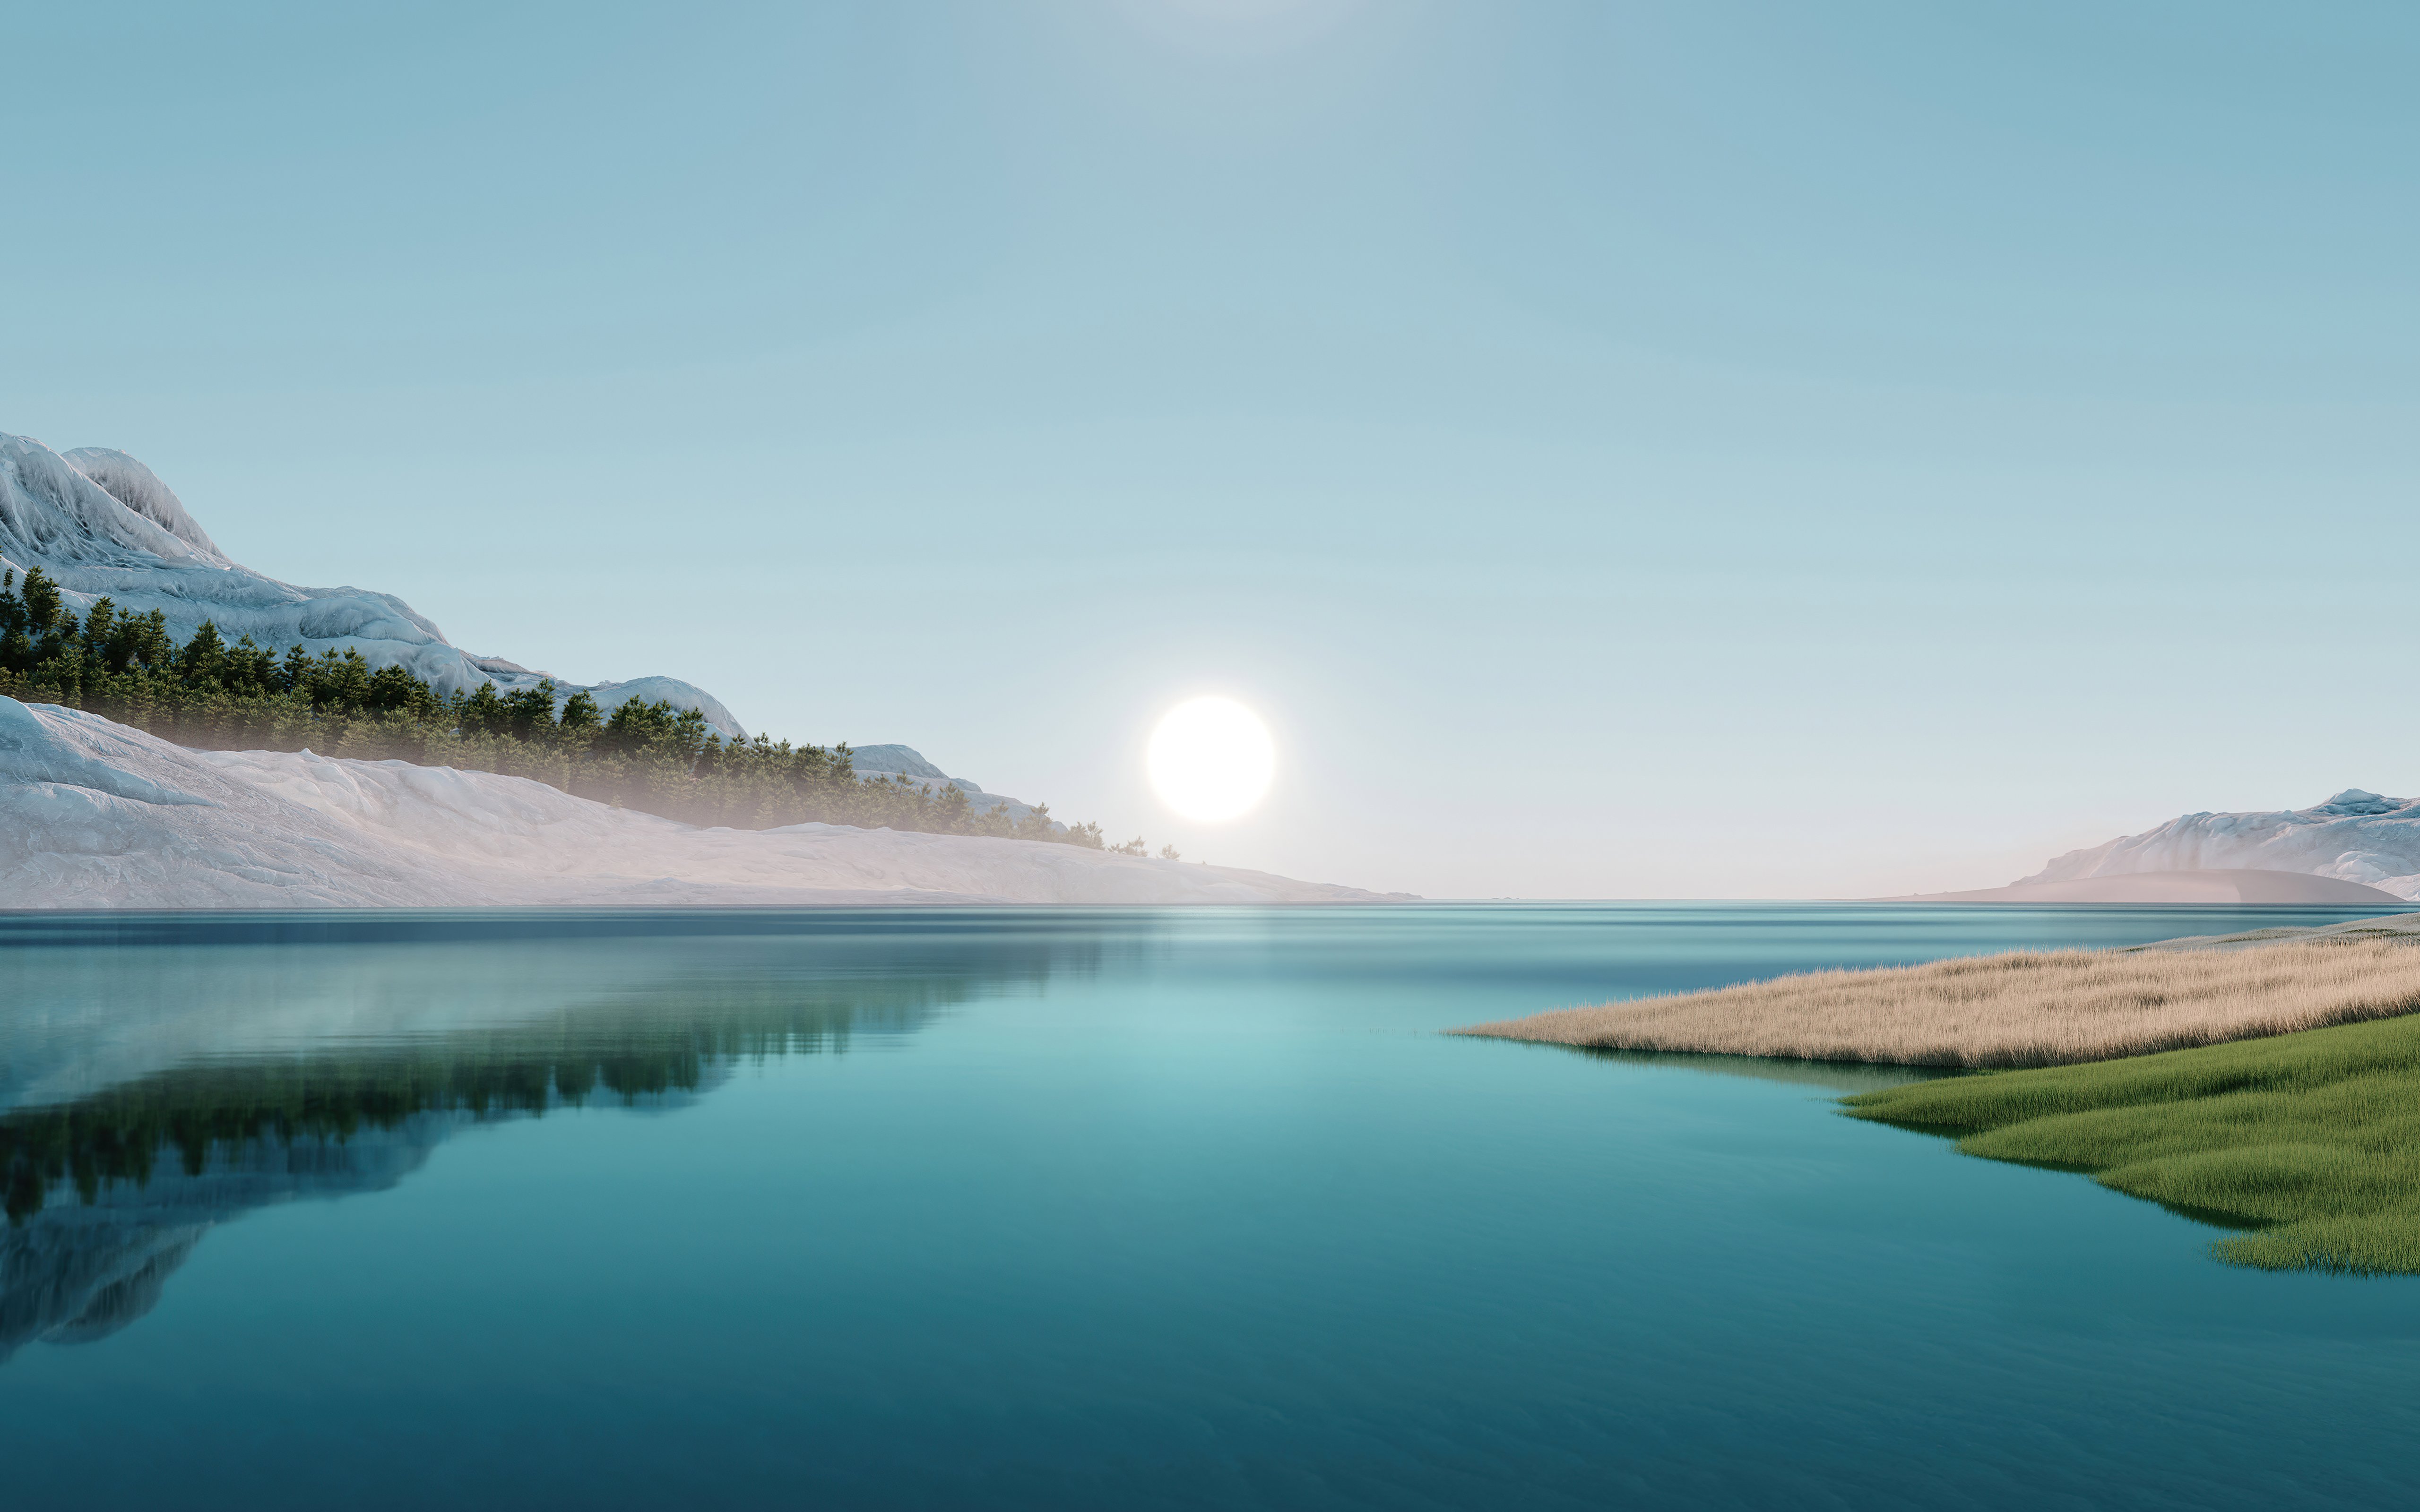 Fondos de pantalla Ilustración de amanecer frente a lago